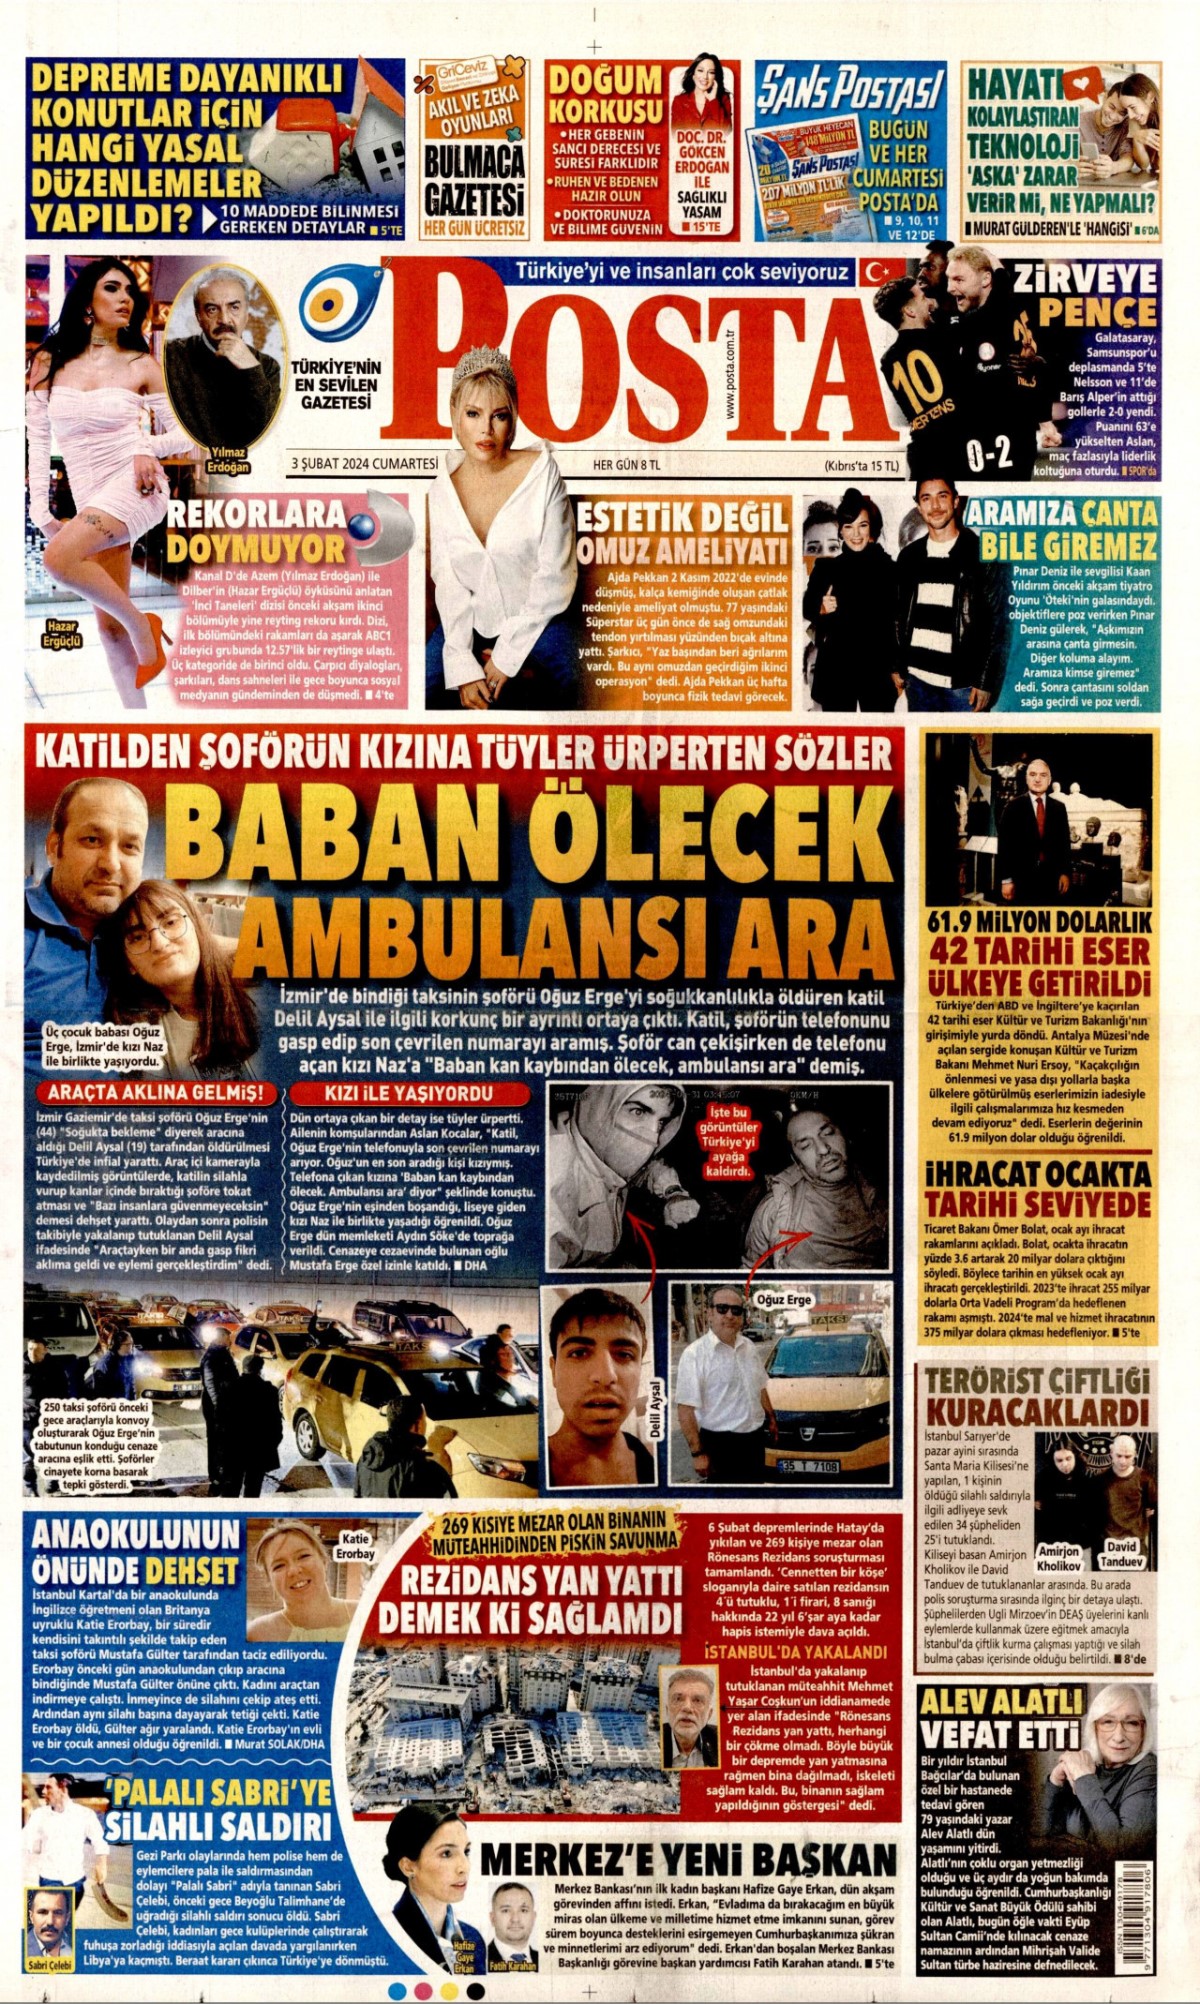 Gazeteler Hafize Gaye Erkan'ın istifasını nasıl gördü? 'Yüzde 45’e çıkardıkları faiz kaldı, kendi gitti'